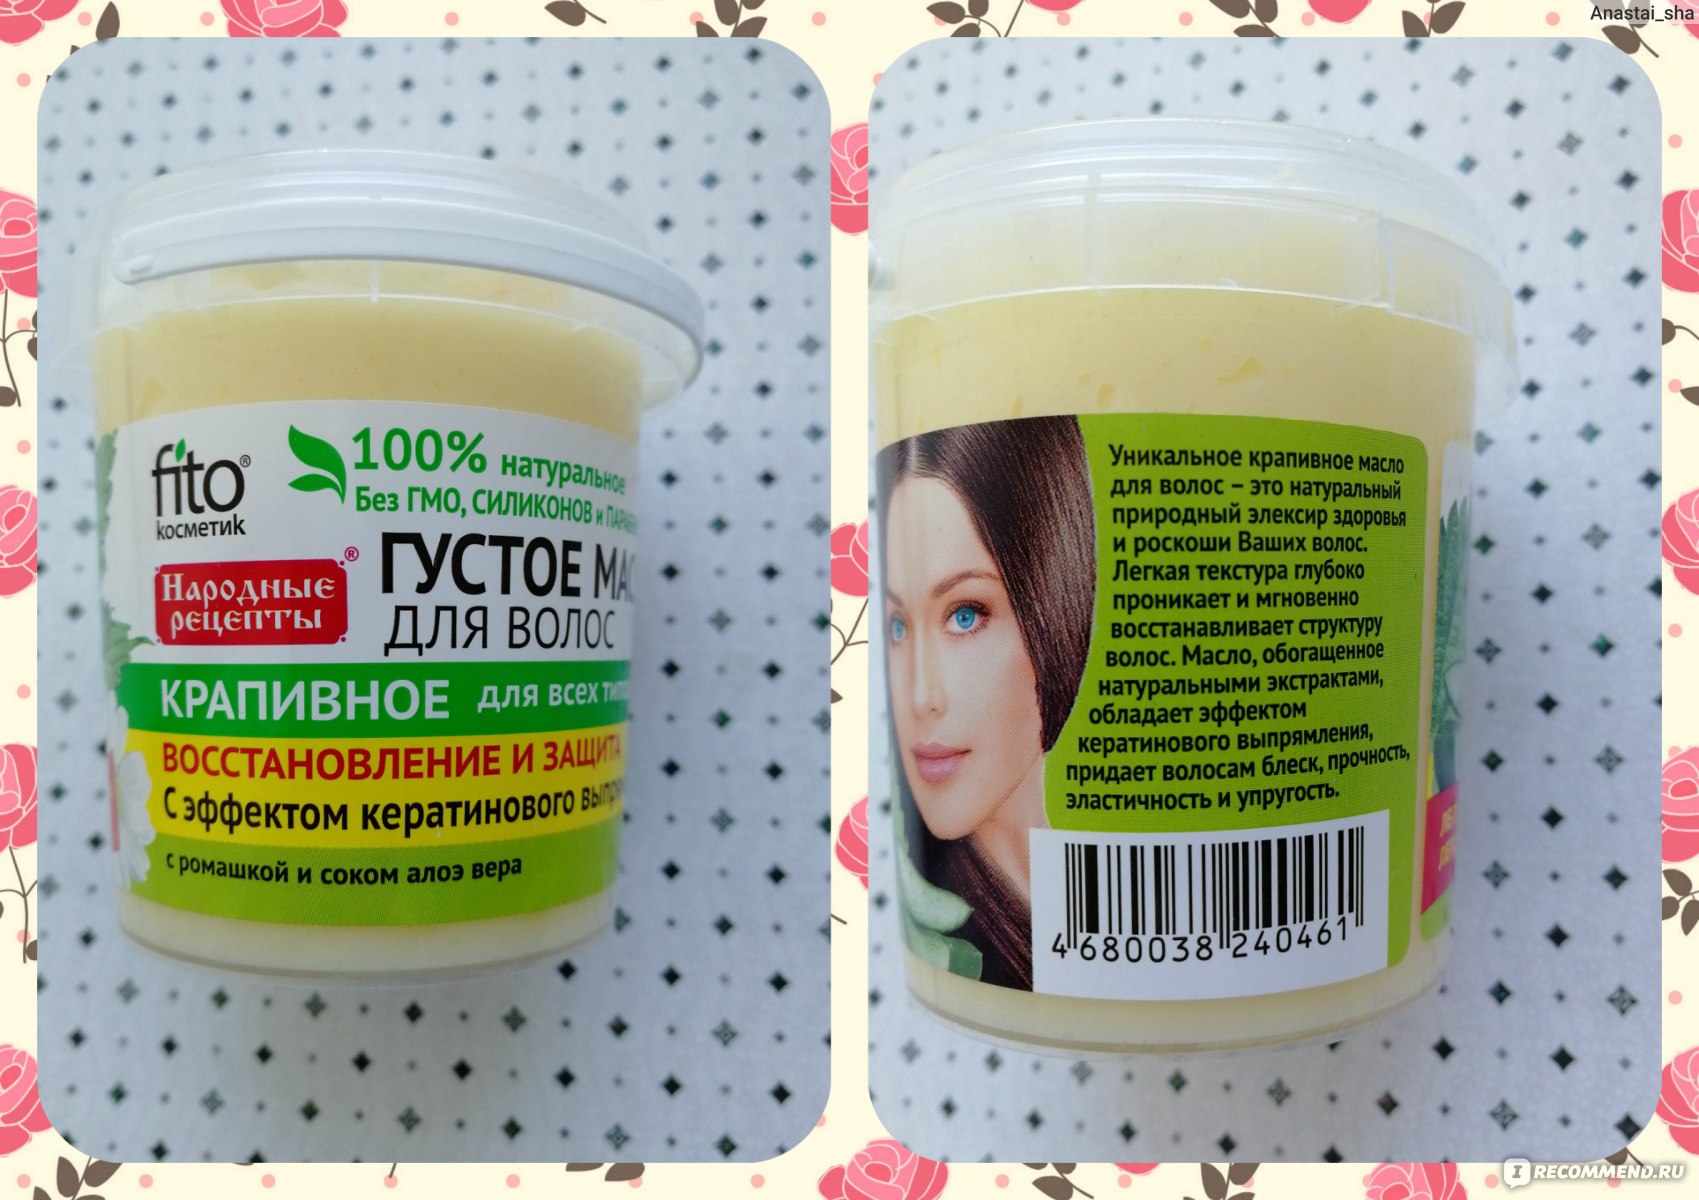 Мой отзыв на густое масло для волос крапивное от фитокосметикс - про-лицо.ру